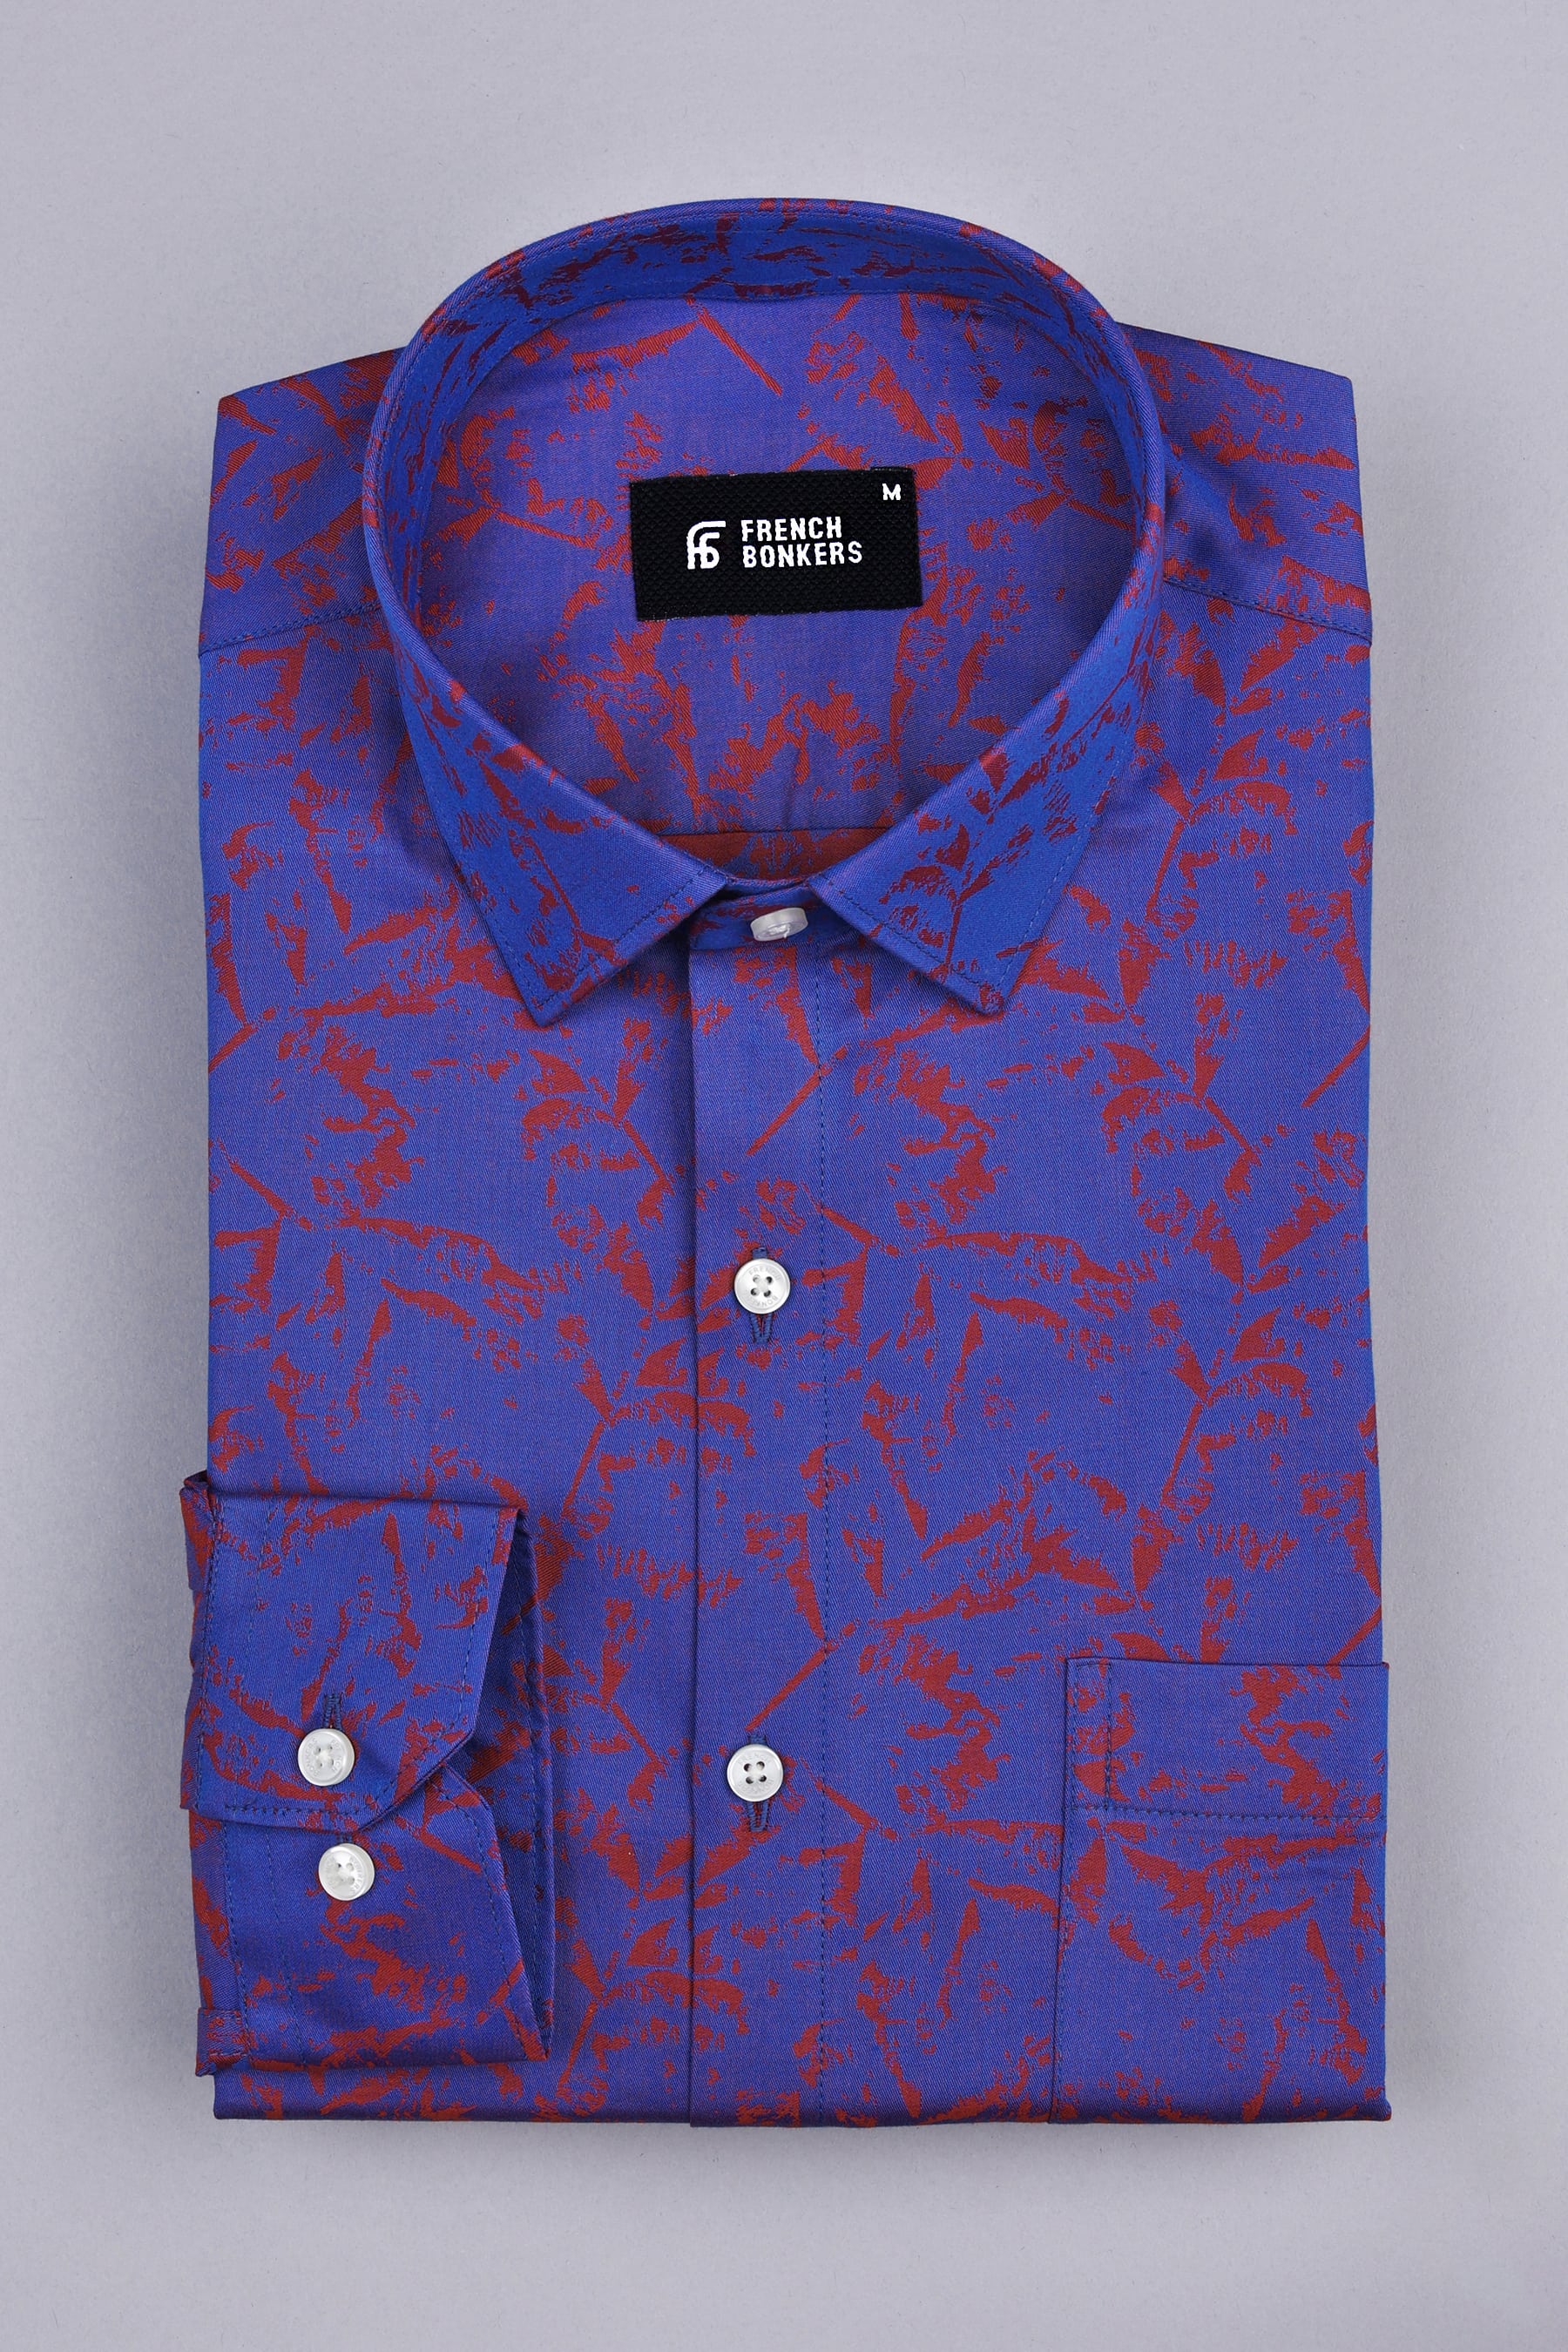 Royal blue and red jacquard printed shirt